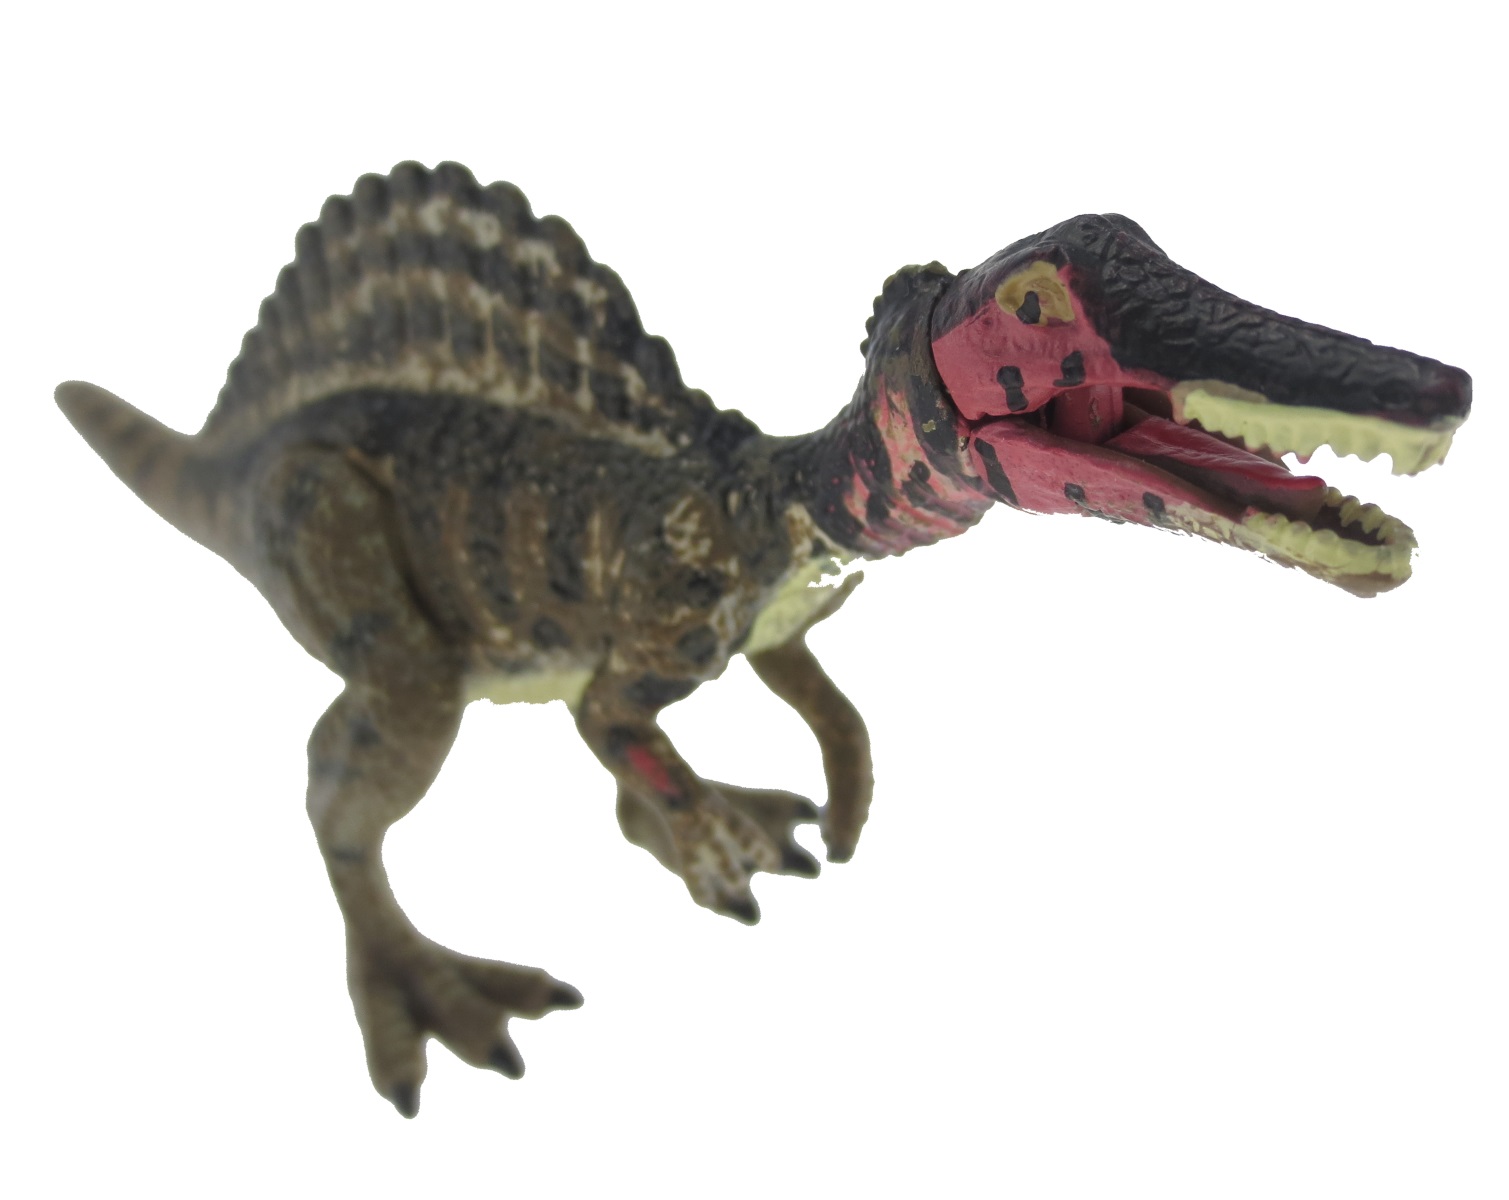 楽天市場 講談社監修 Move 恐竜 フィギュア スピノサウルス 白亜紀 肉食恐竜 図鑑 おもちゃ プレゼント ３d 恐竜 おもちゃのヤマサン